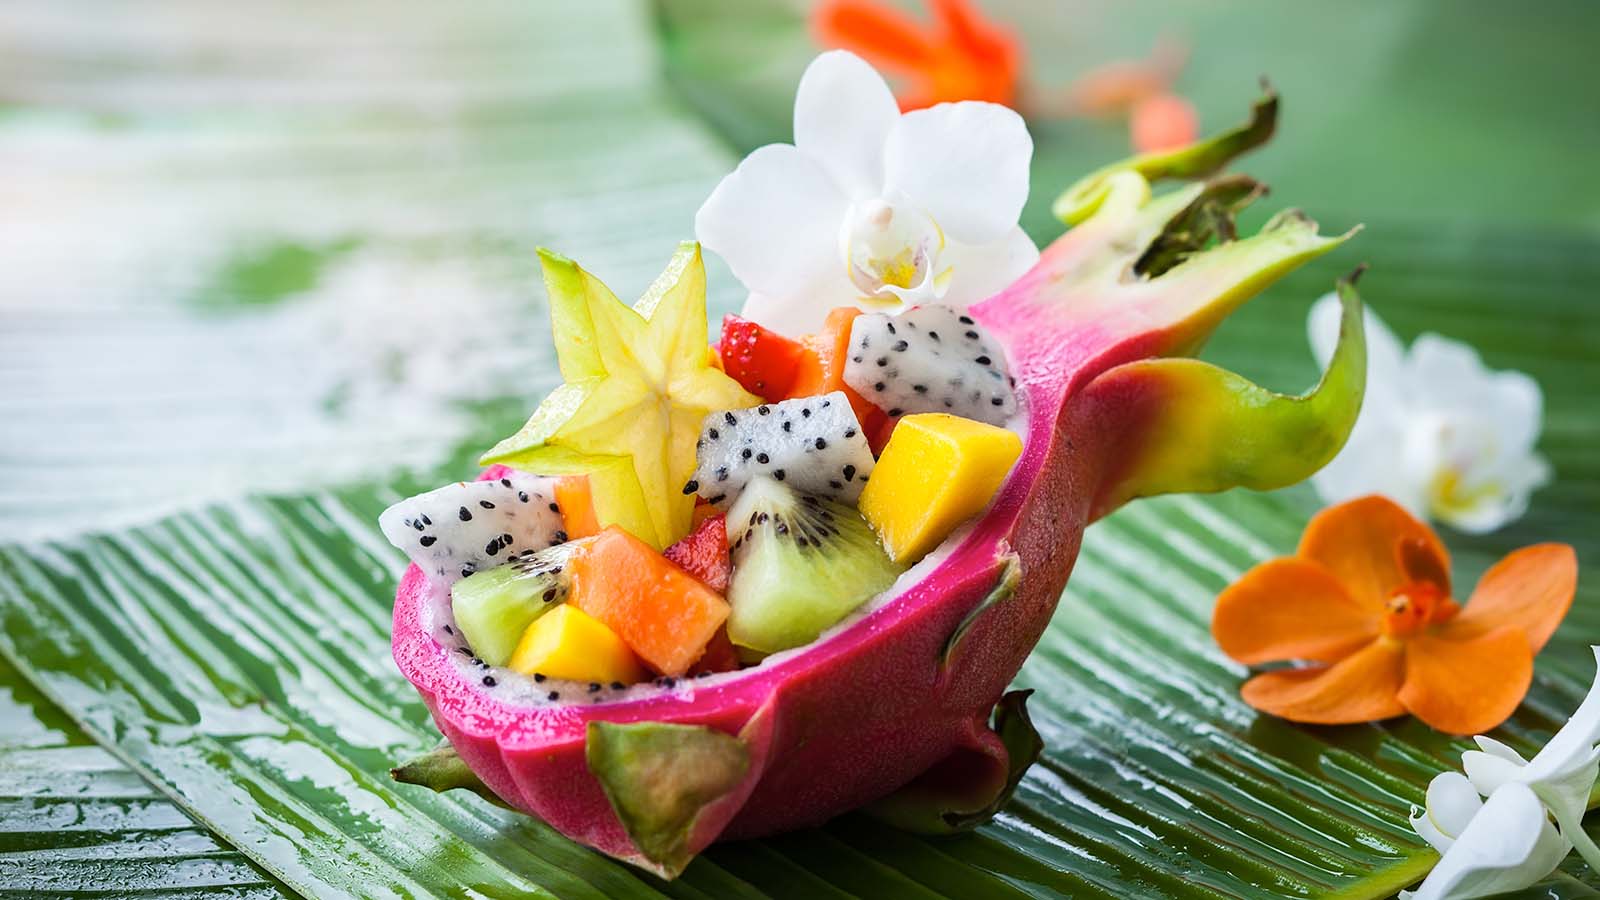 Exotic fruit salad served in dragon fruit